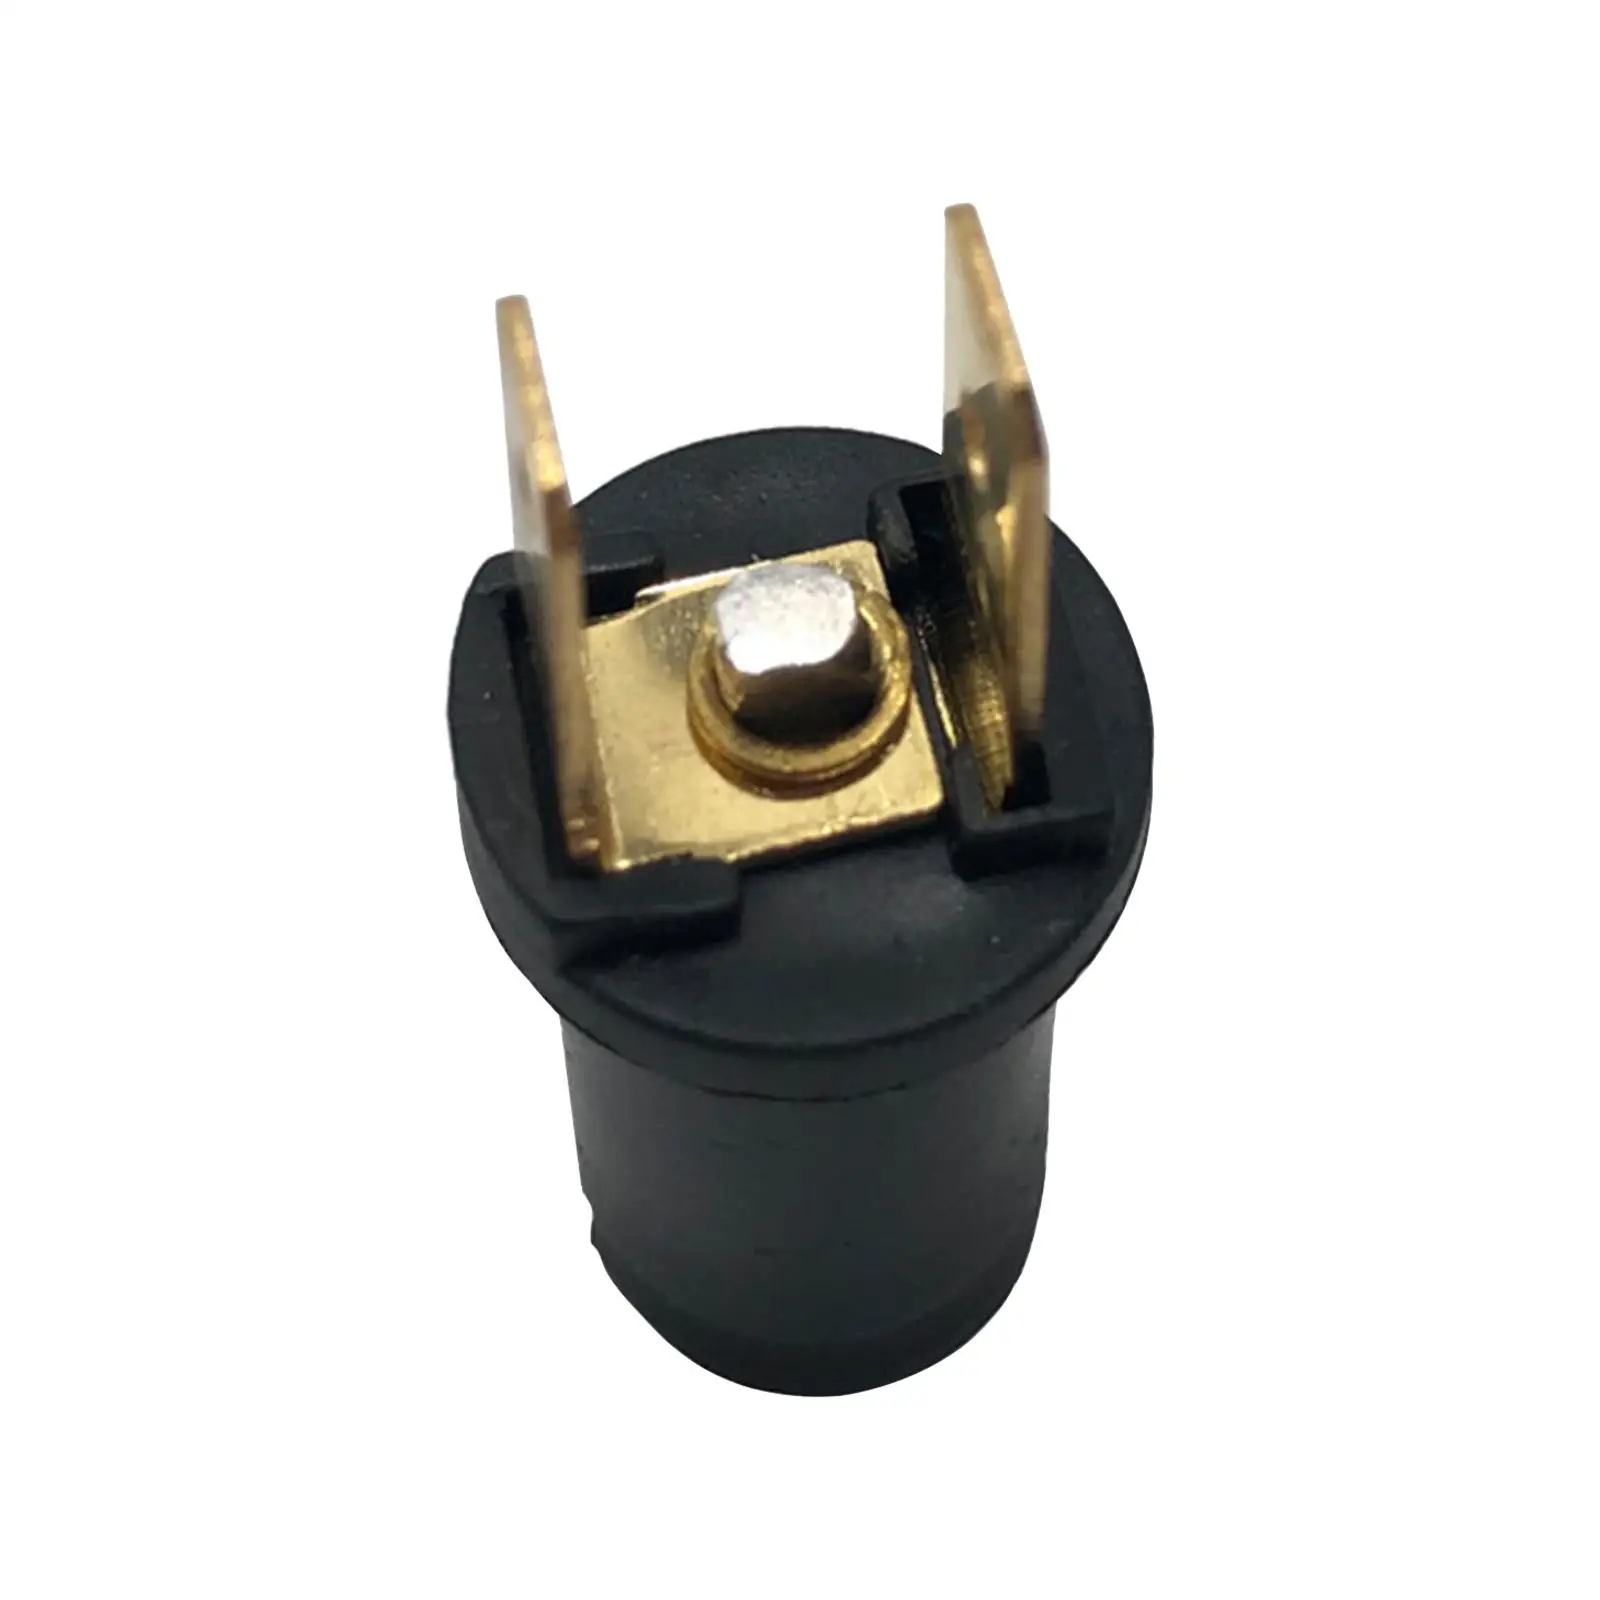 Side Lamp Holder Easy Installation Pilot Light Bulb Holder for 287 6V 2W 233A 12V 4W 249 24V 4W 641 6V 3W 867 24V 2.8W